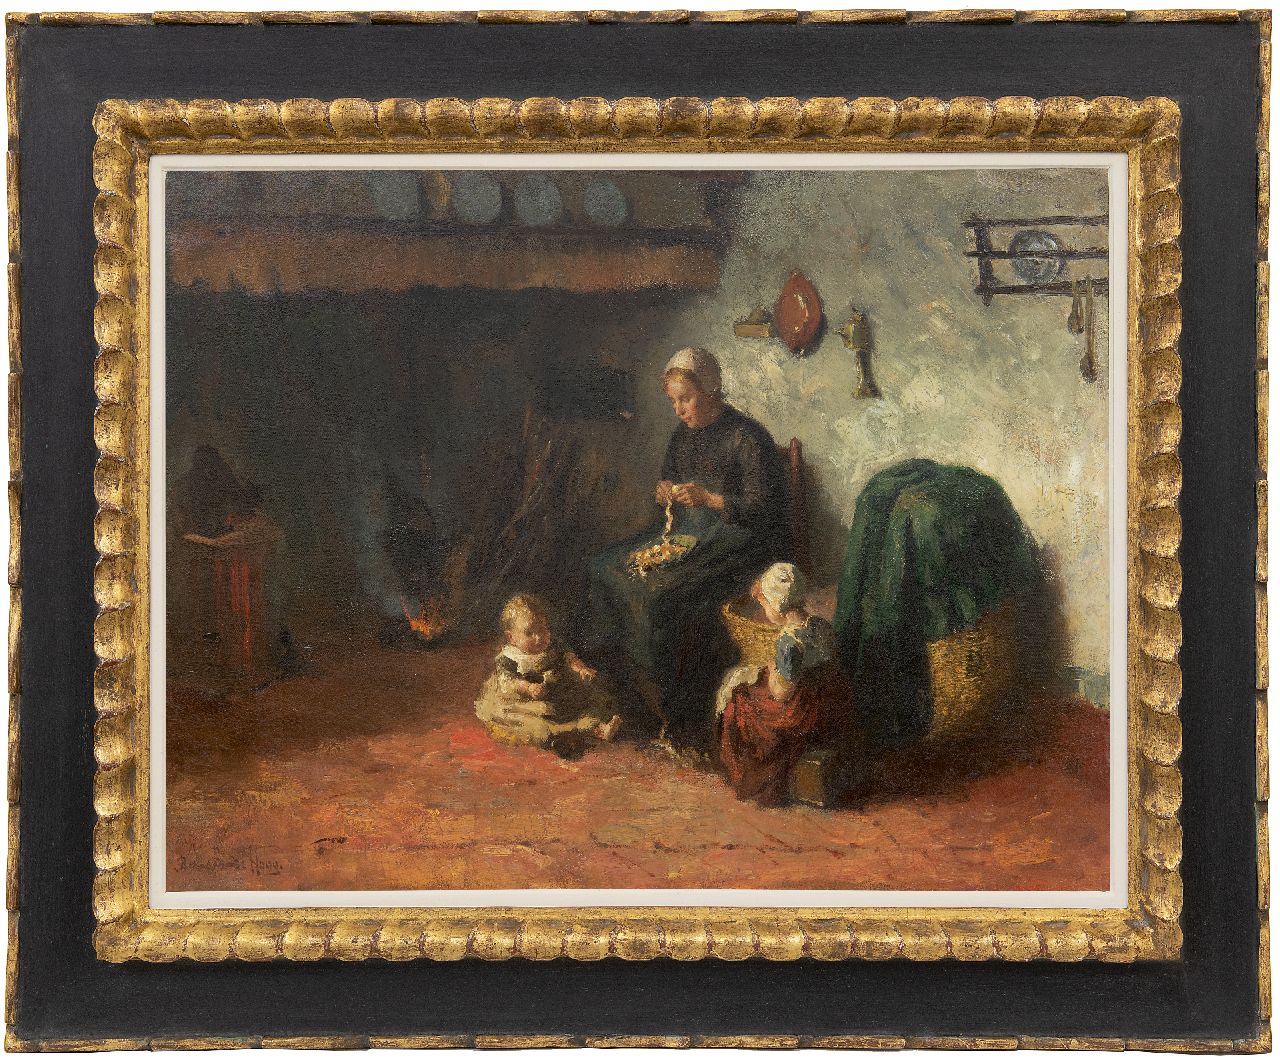 Hoog J.B. de | Johan 'Bernard' de Hoog | Schilderijen te koop aangeboden | Boereninterieur met jonge moeder en kinderen, olieverf op doek 50,0 x 65,5 cm, gesigneerd linksonder